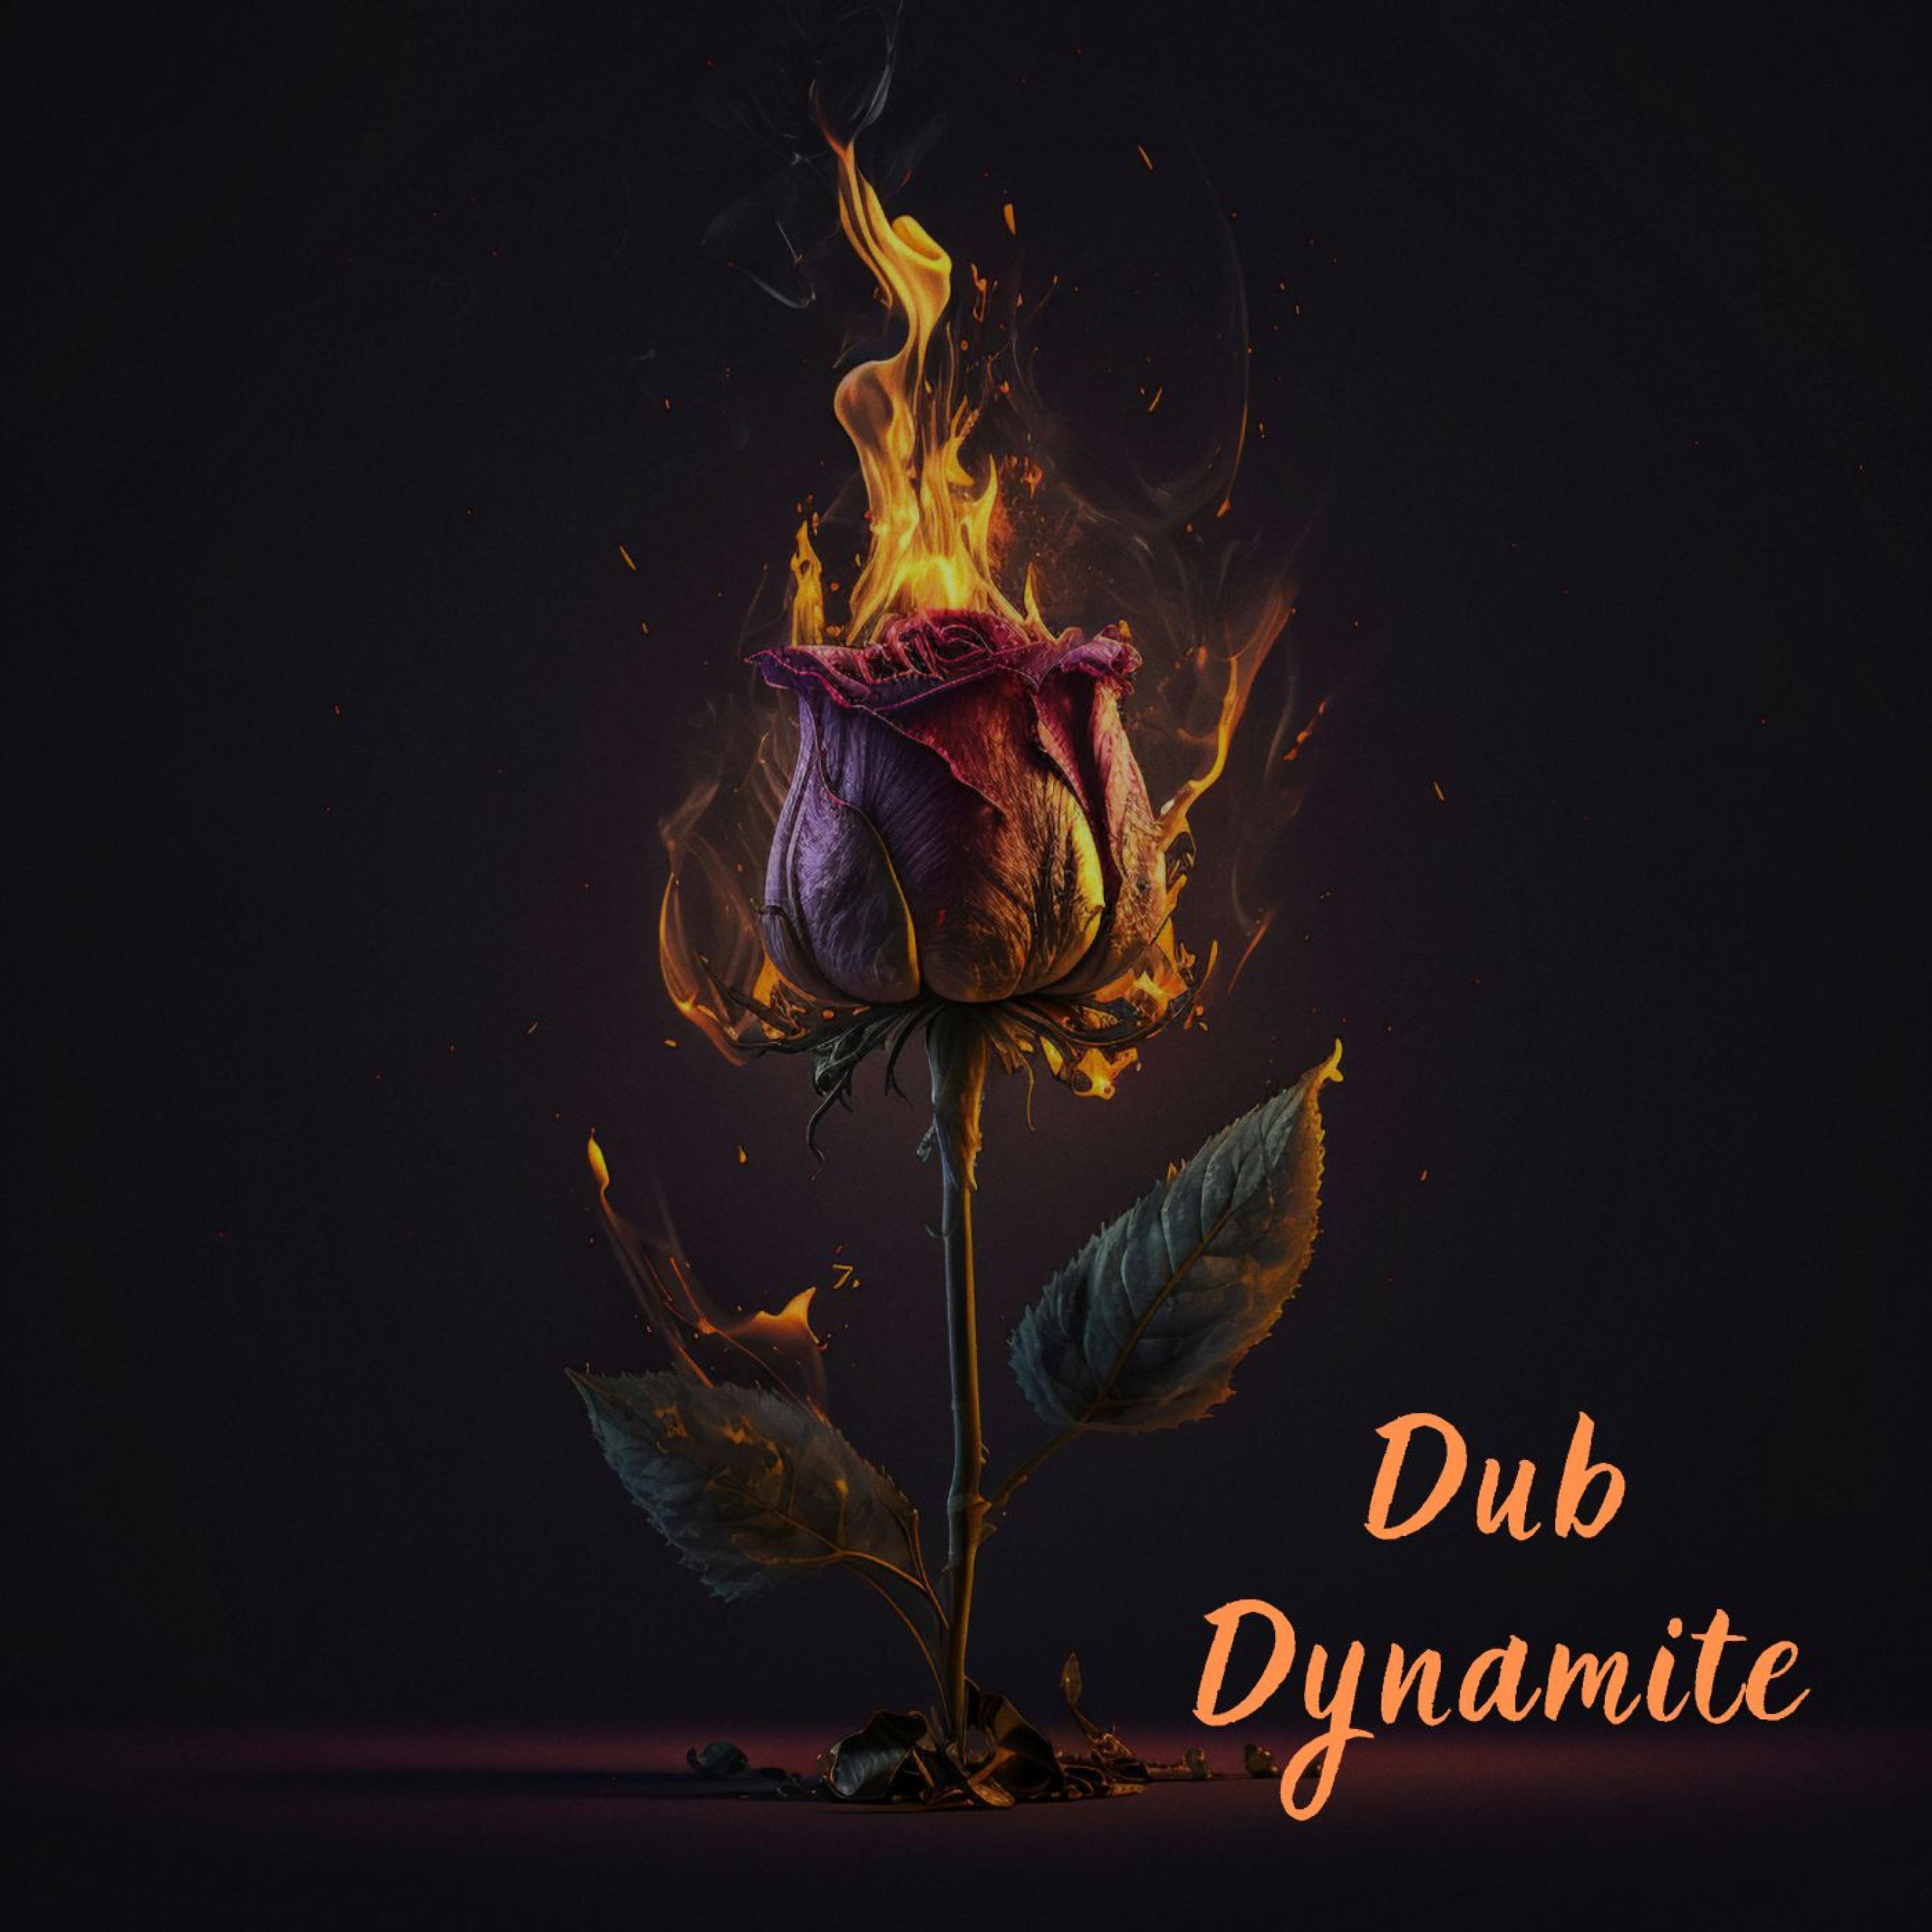 Dub Dynamite - Lowkey